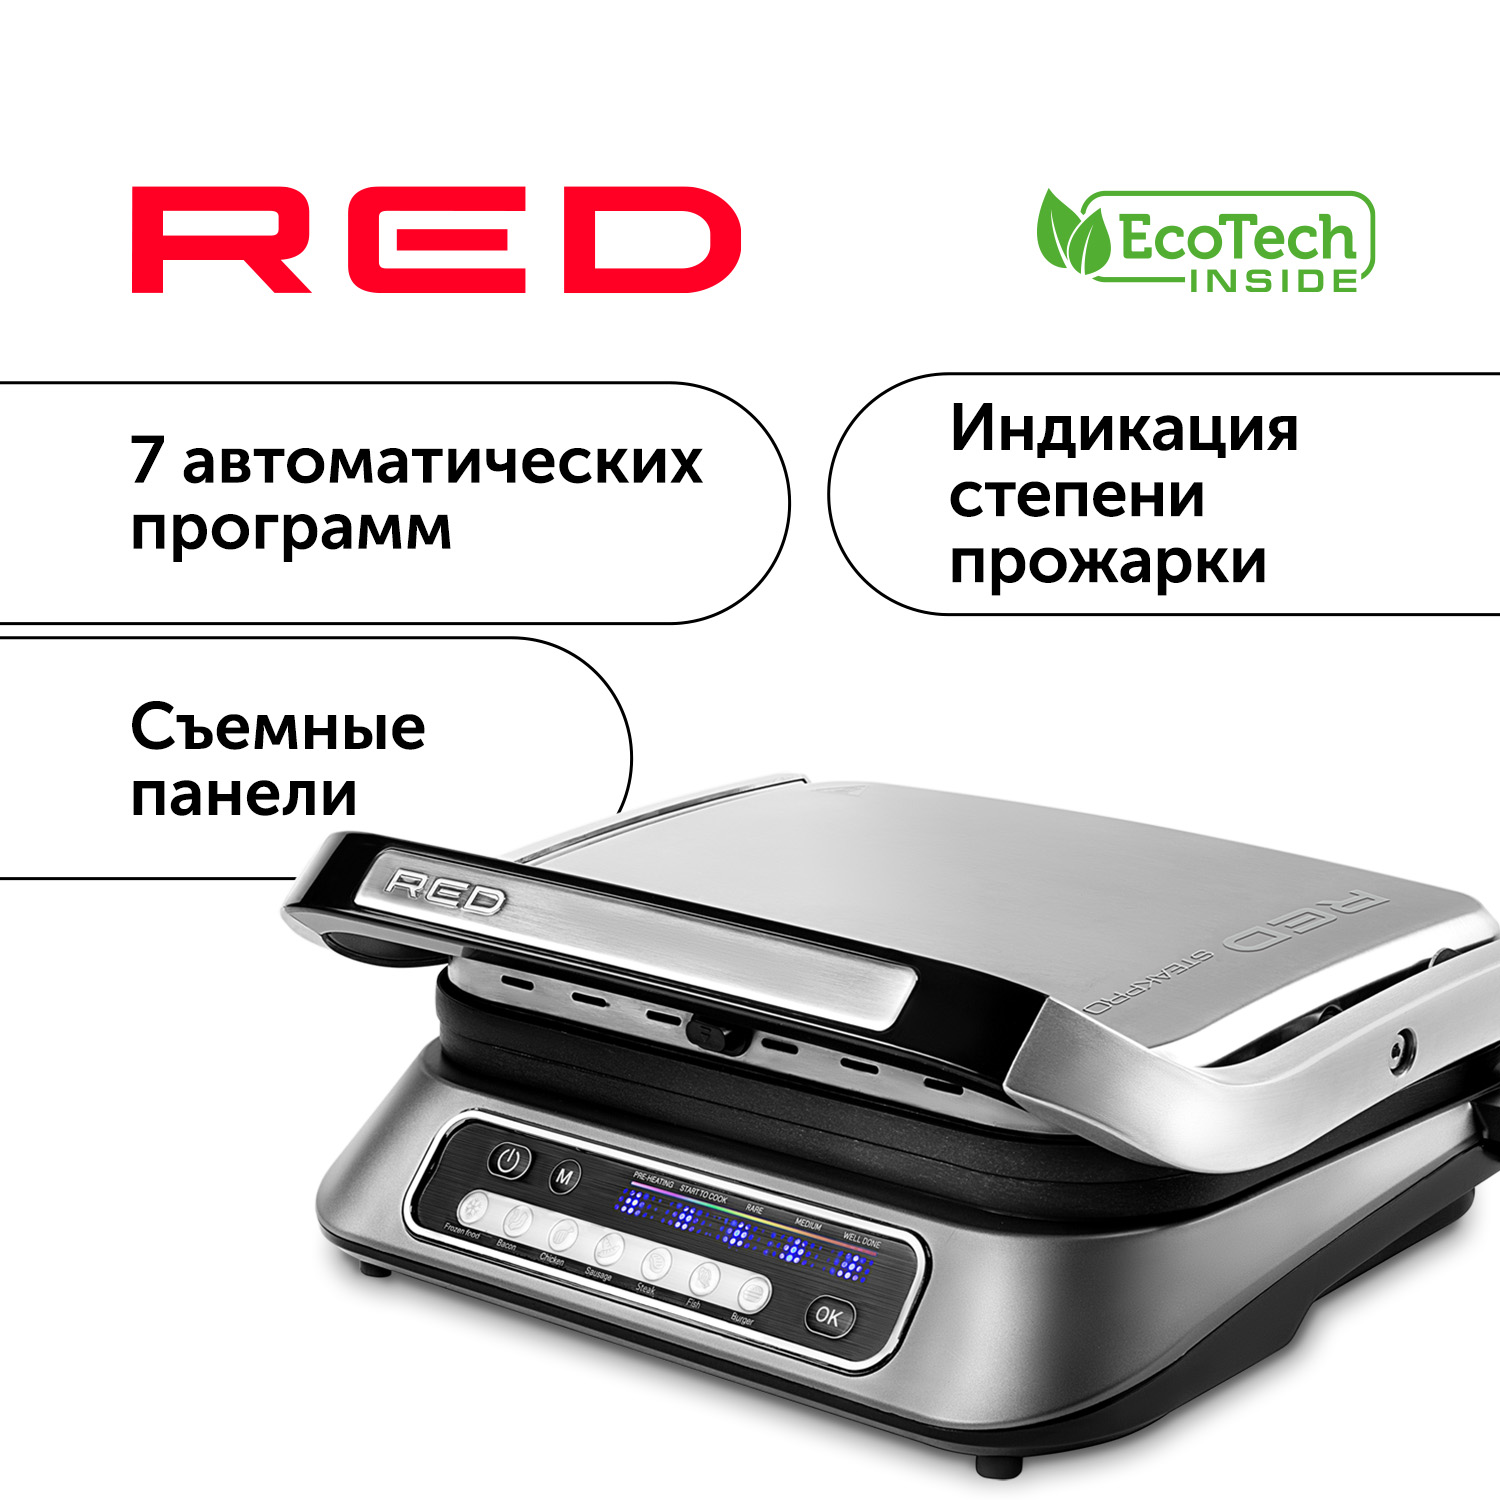 Гриль RED SOLUTION RGM-M805 серебристый, черный, купить в Москве, цены в интернет-магазинах на Мегамаркет